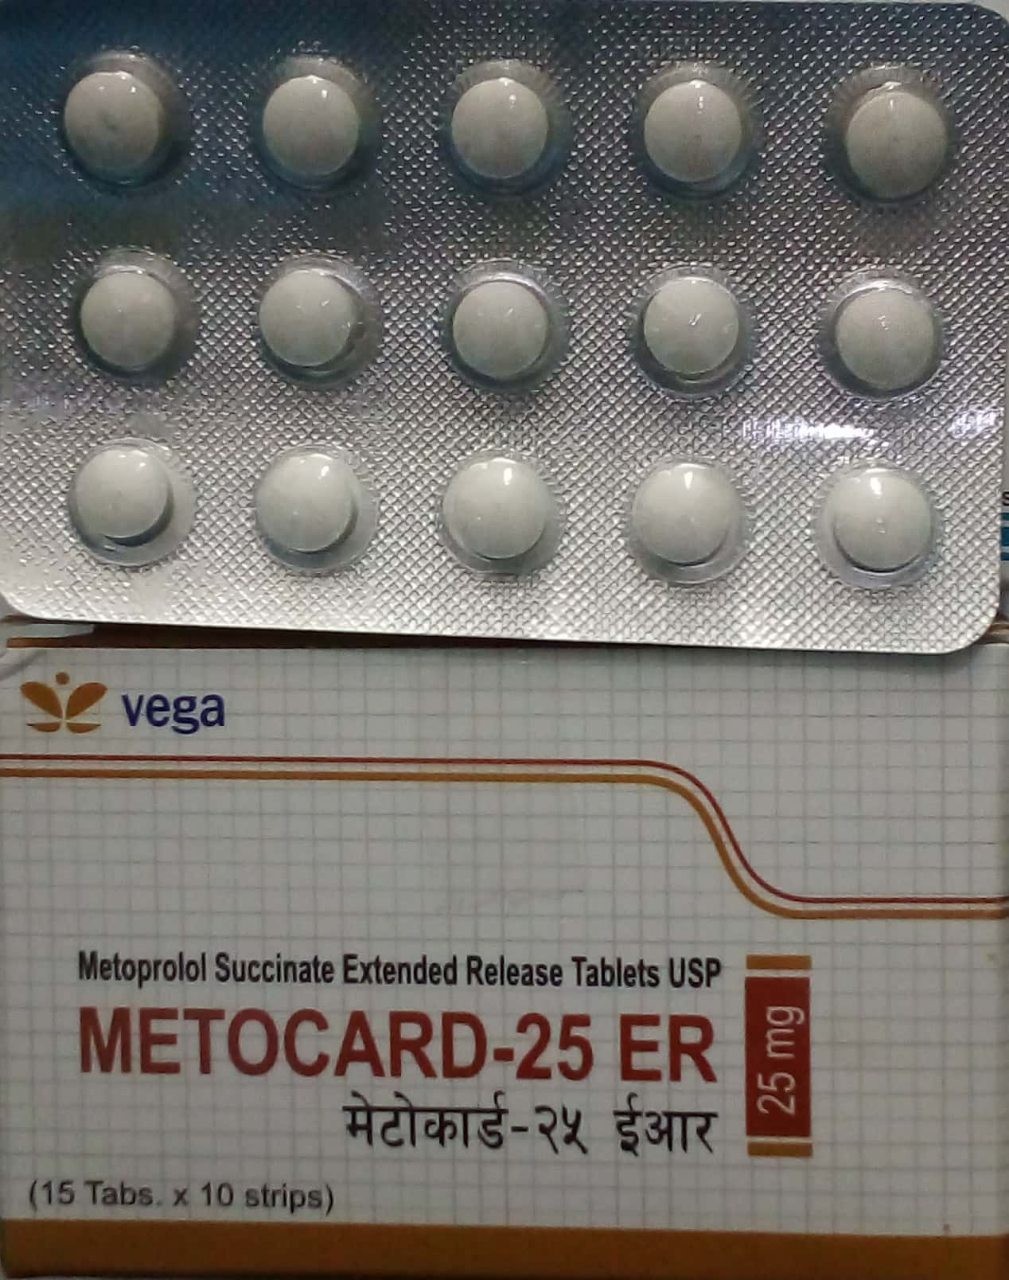 Metocard-25 Er